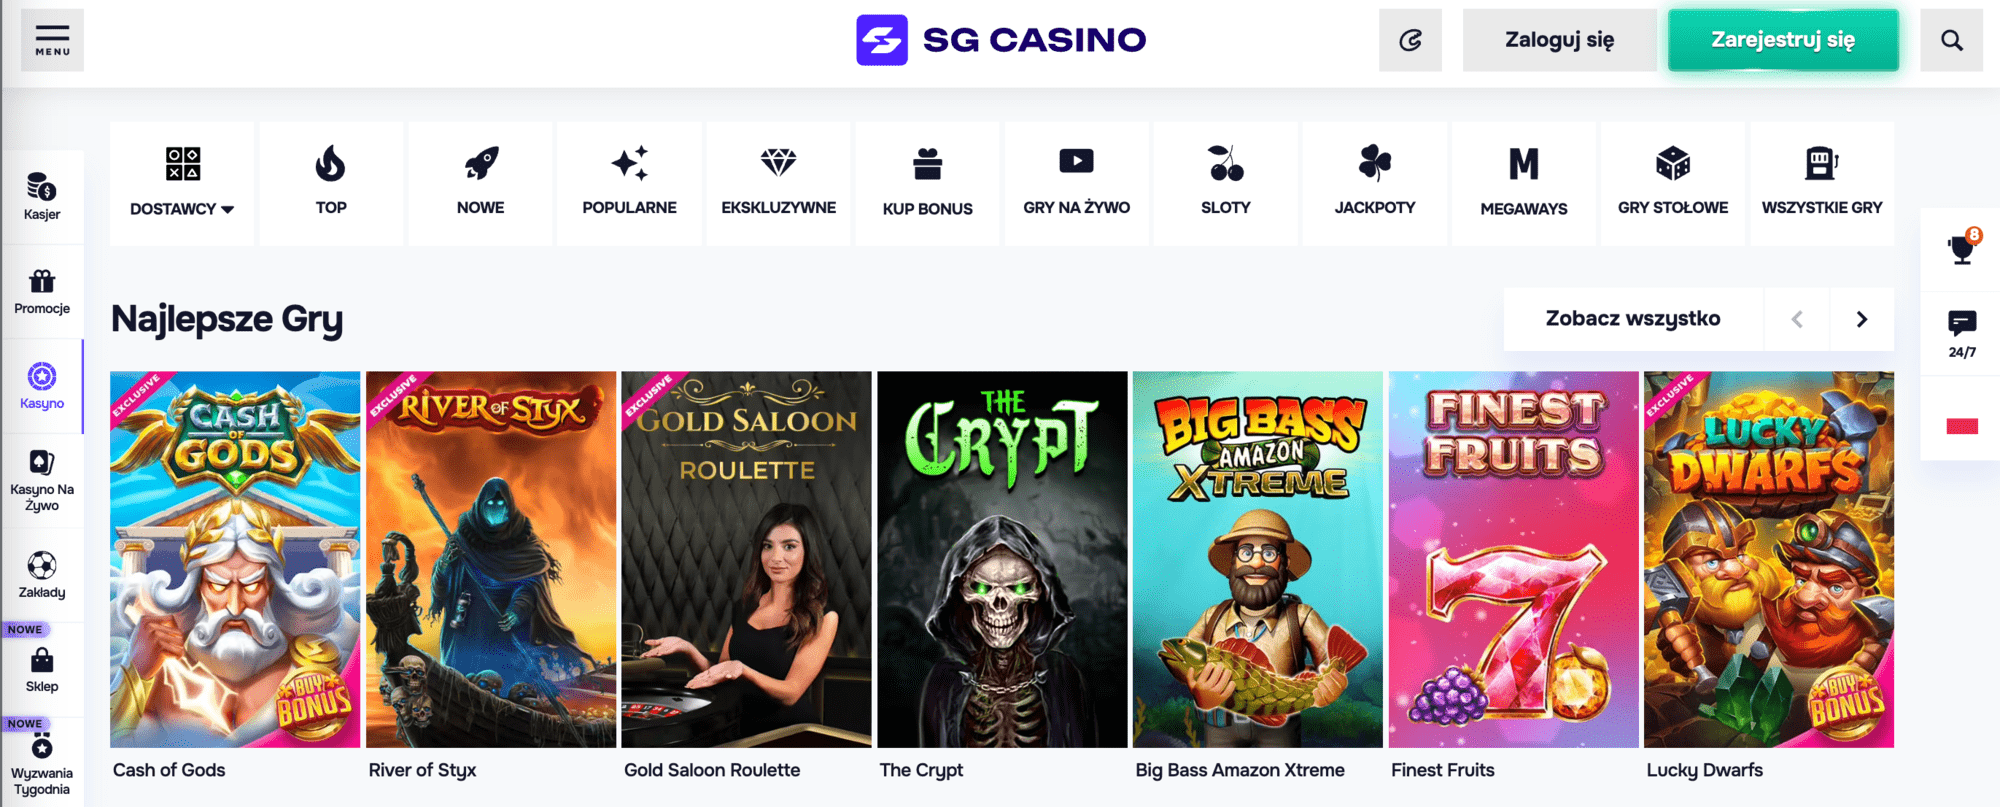 SG Casino Casino slot machines